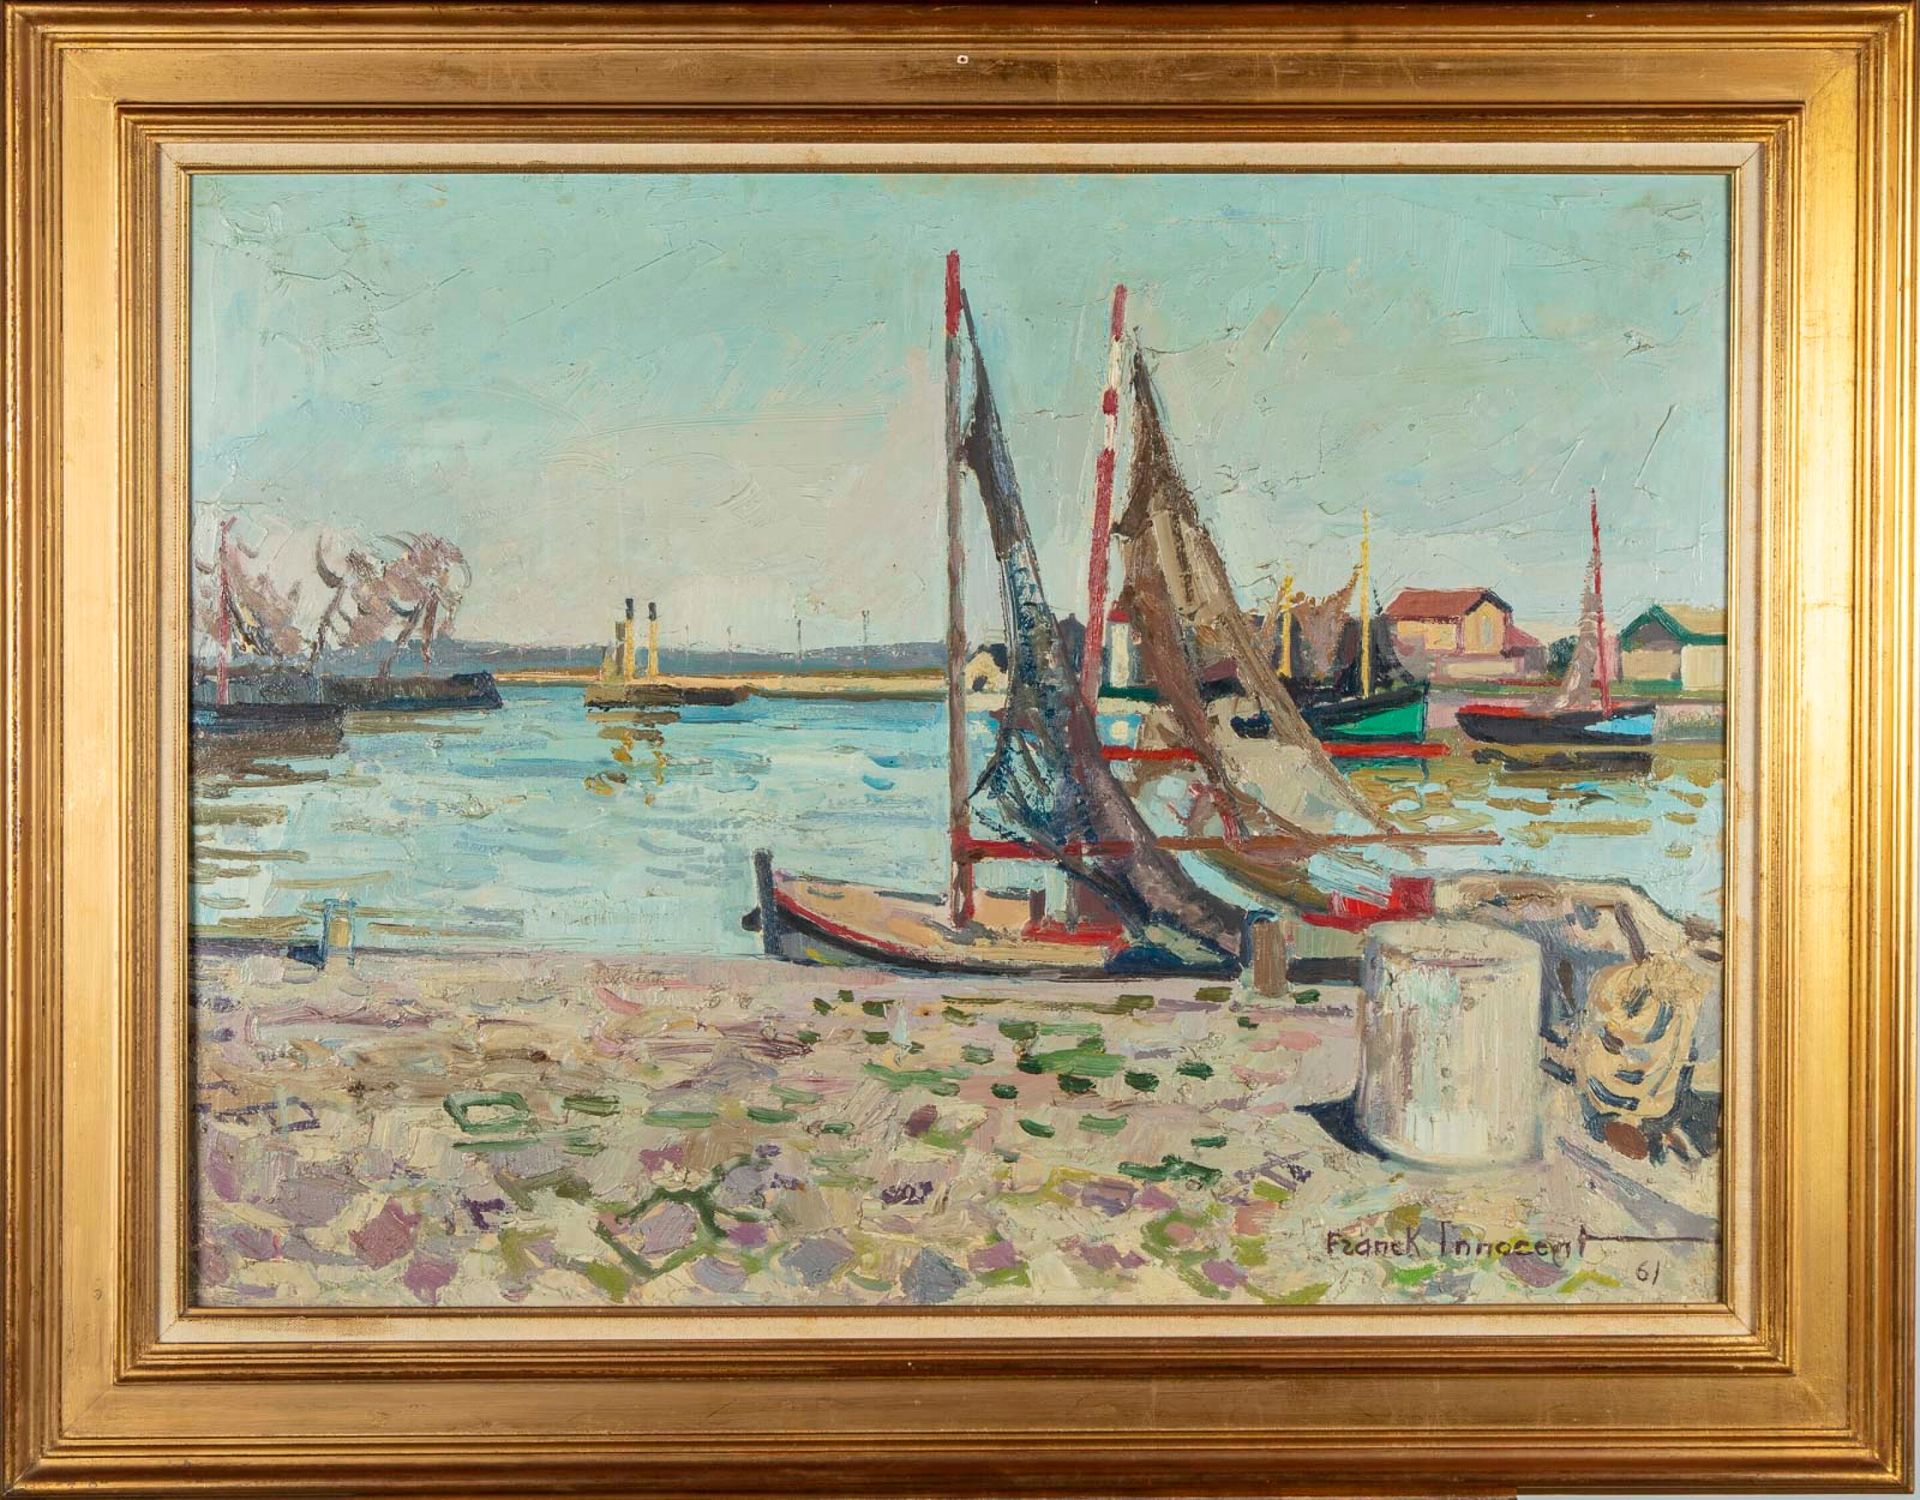 FRANK INNOCENT 弗朗克-英诺德(1912-1983)

鸿福莱尔港的入口

布面油画

右下角有签名，日期为 "61

59 x 80厘米